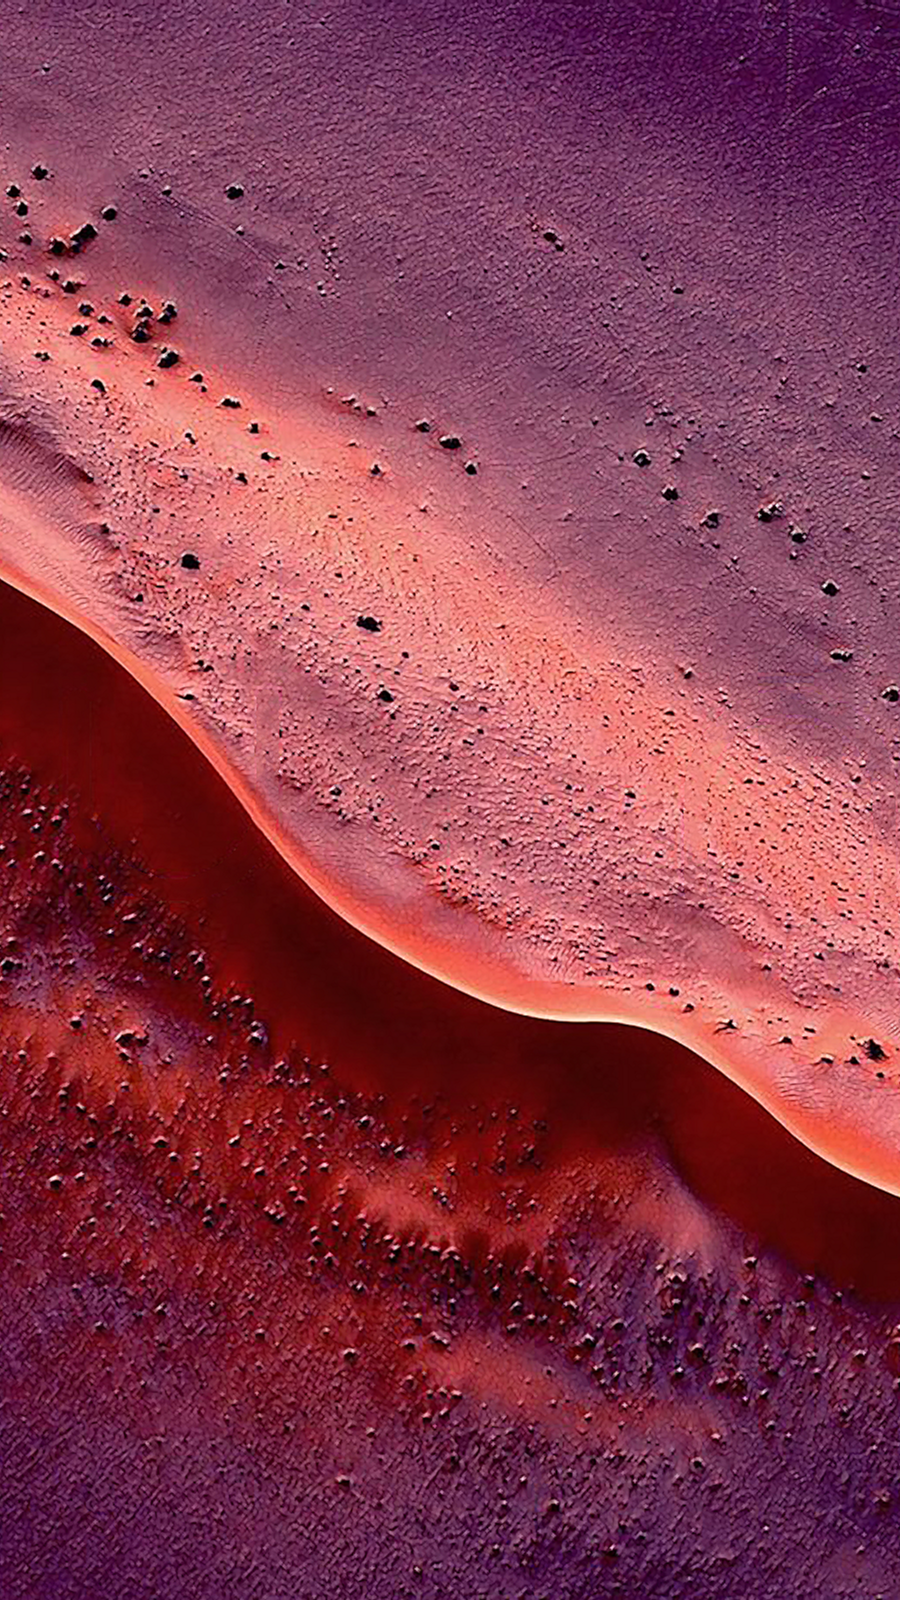 Desert dunes with gradient skies iPhone wallpapers